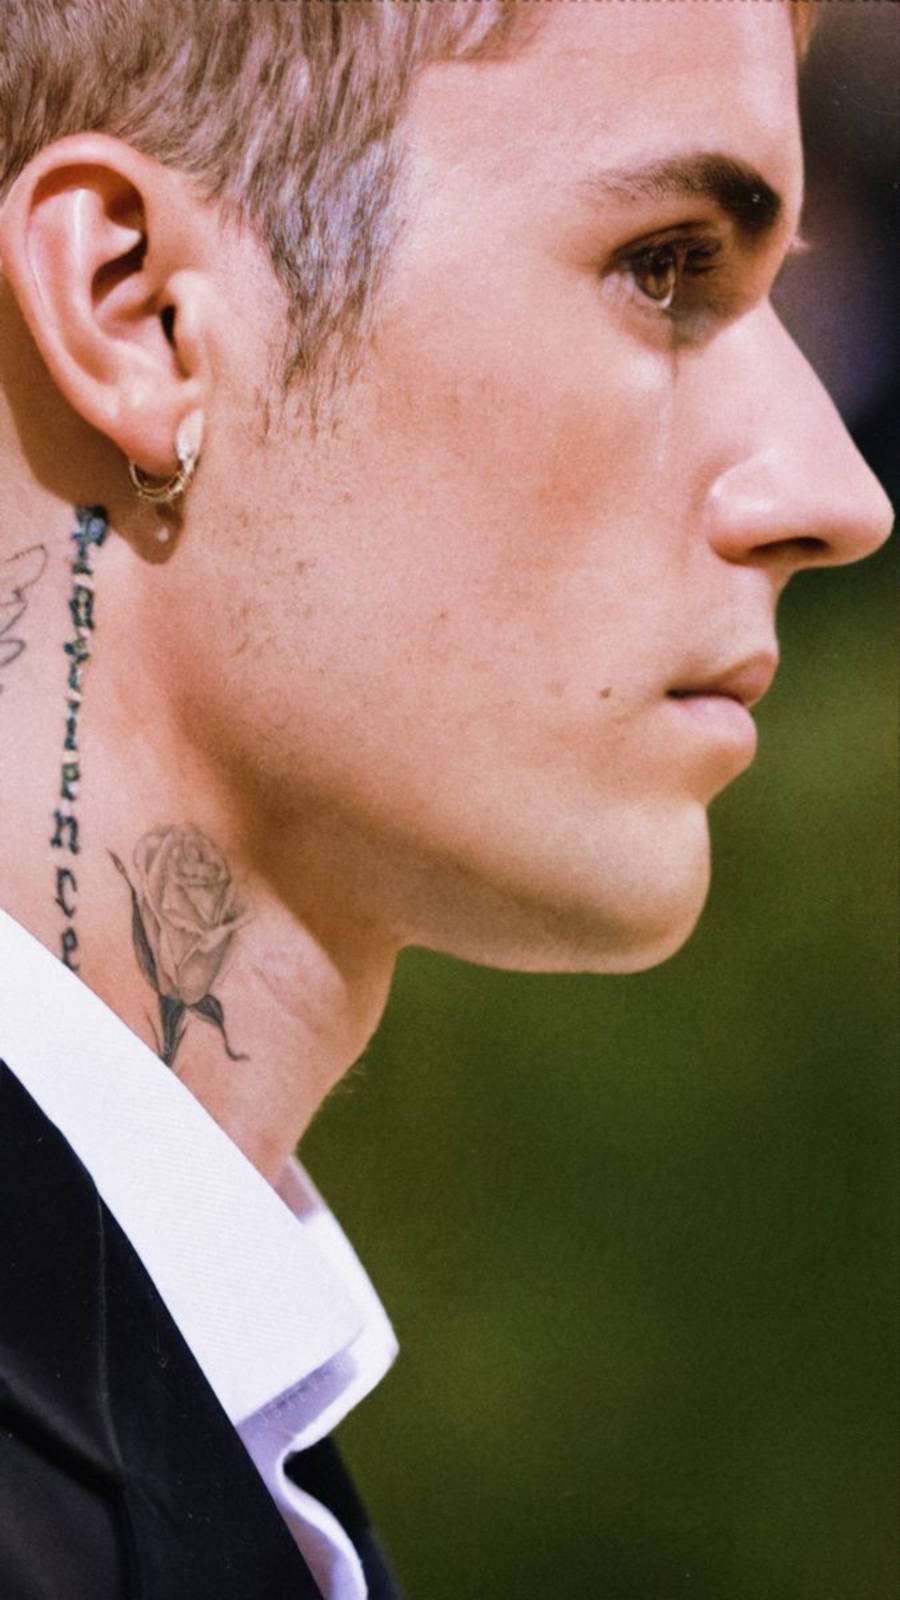 Foto de Justin Bieber de lado com foco em sua tatuagem "Patience"